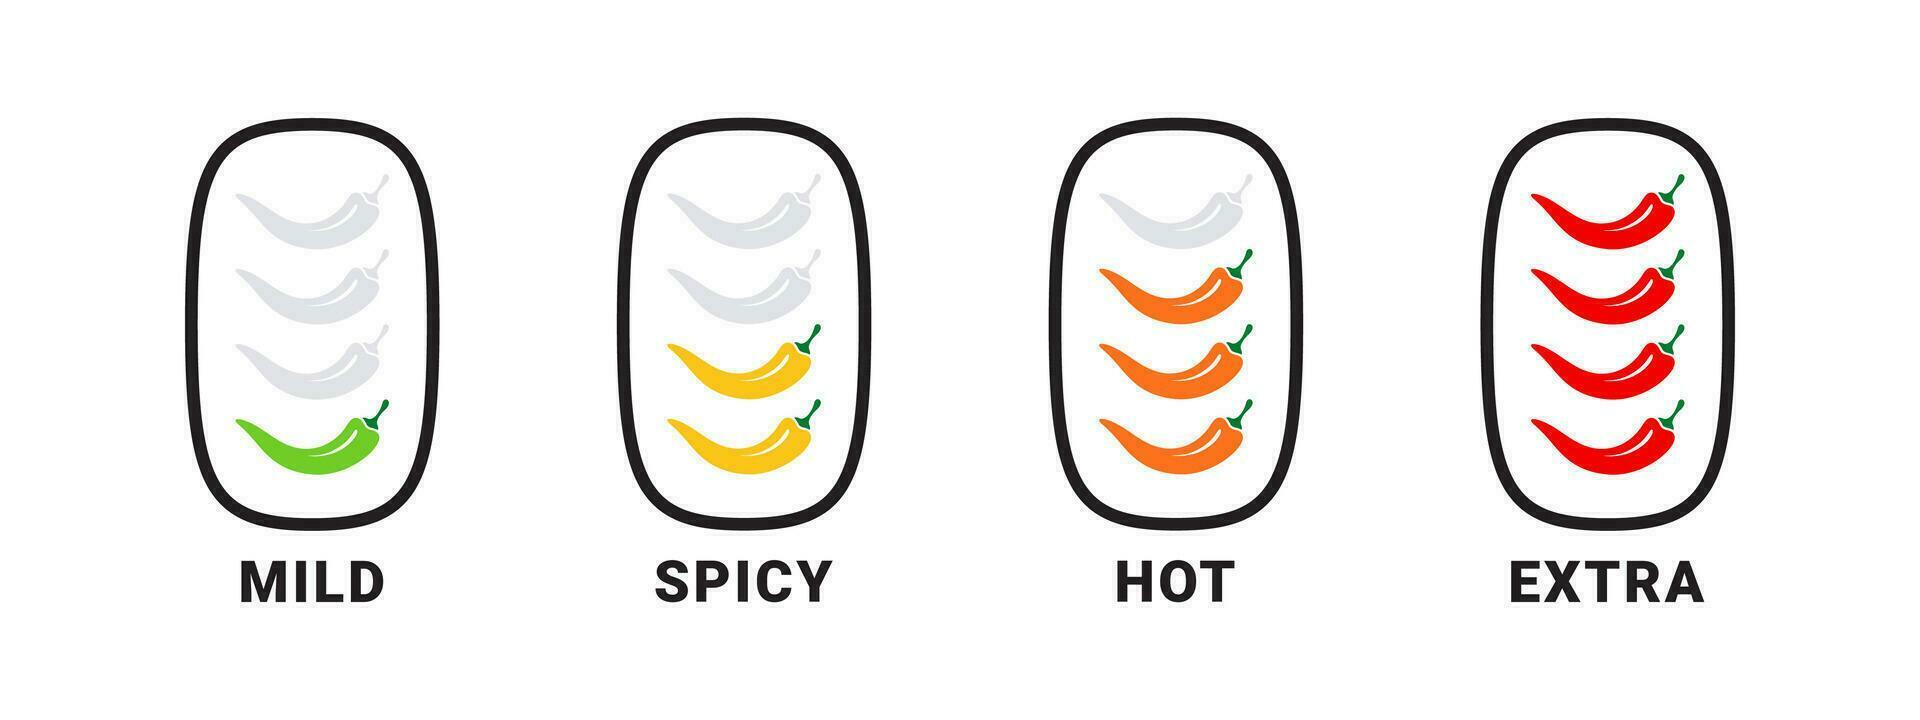 kryddad nivå ikoner. mat kryddighet indikator. kryddad och varm. vektor skalbar grafik